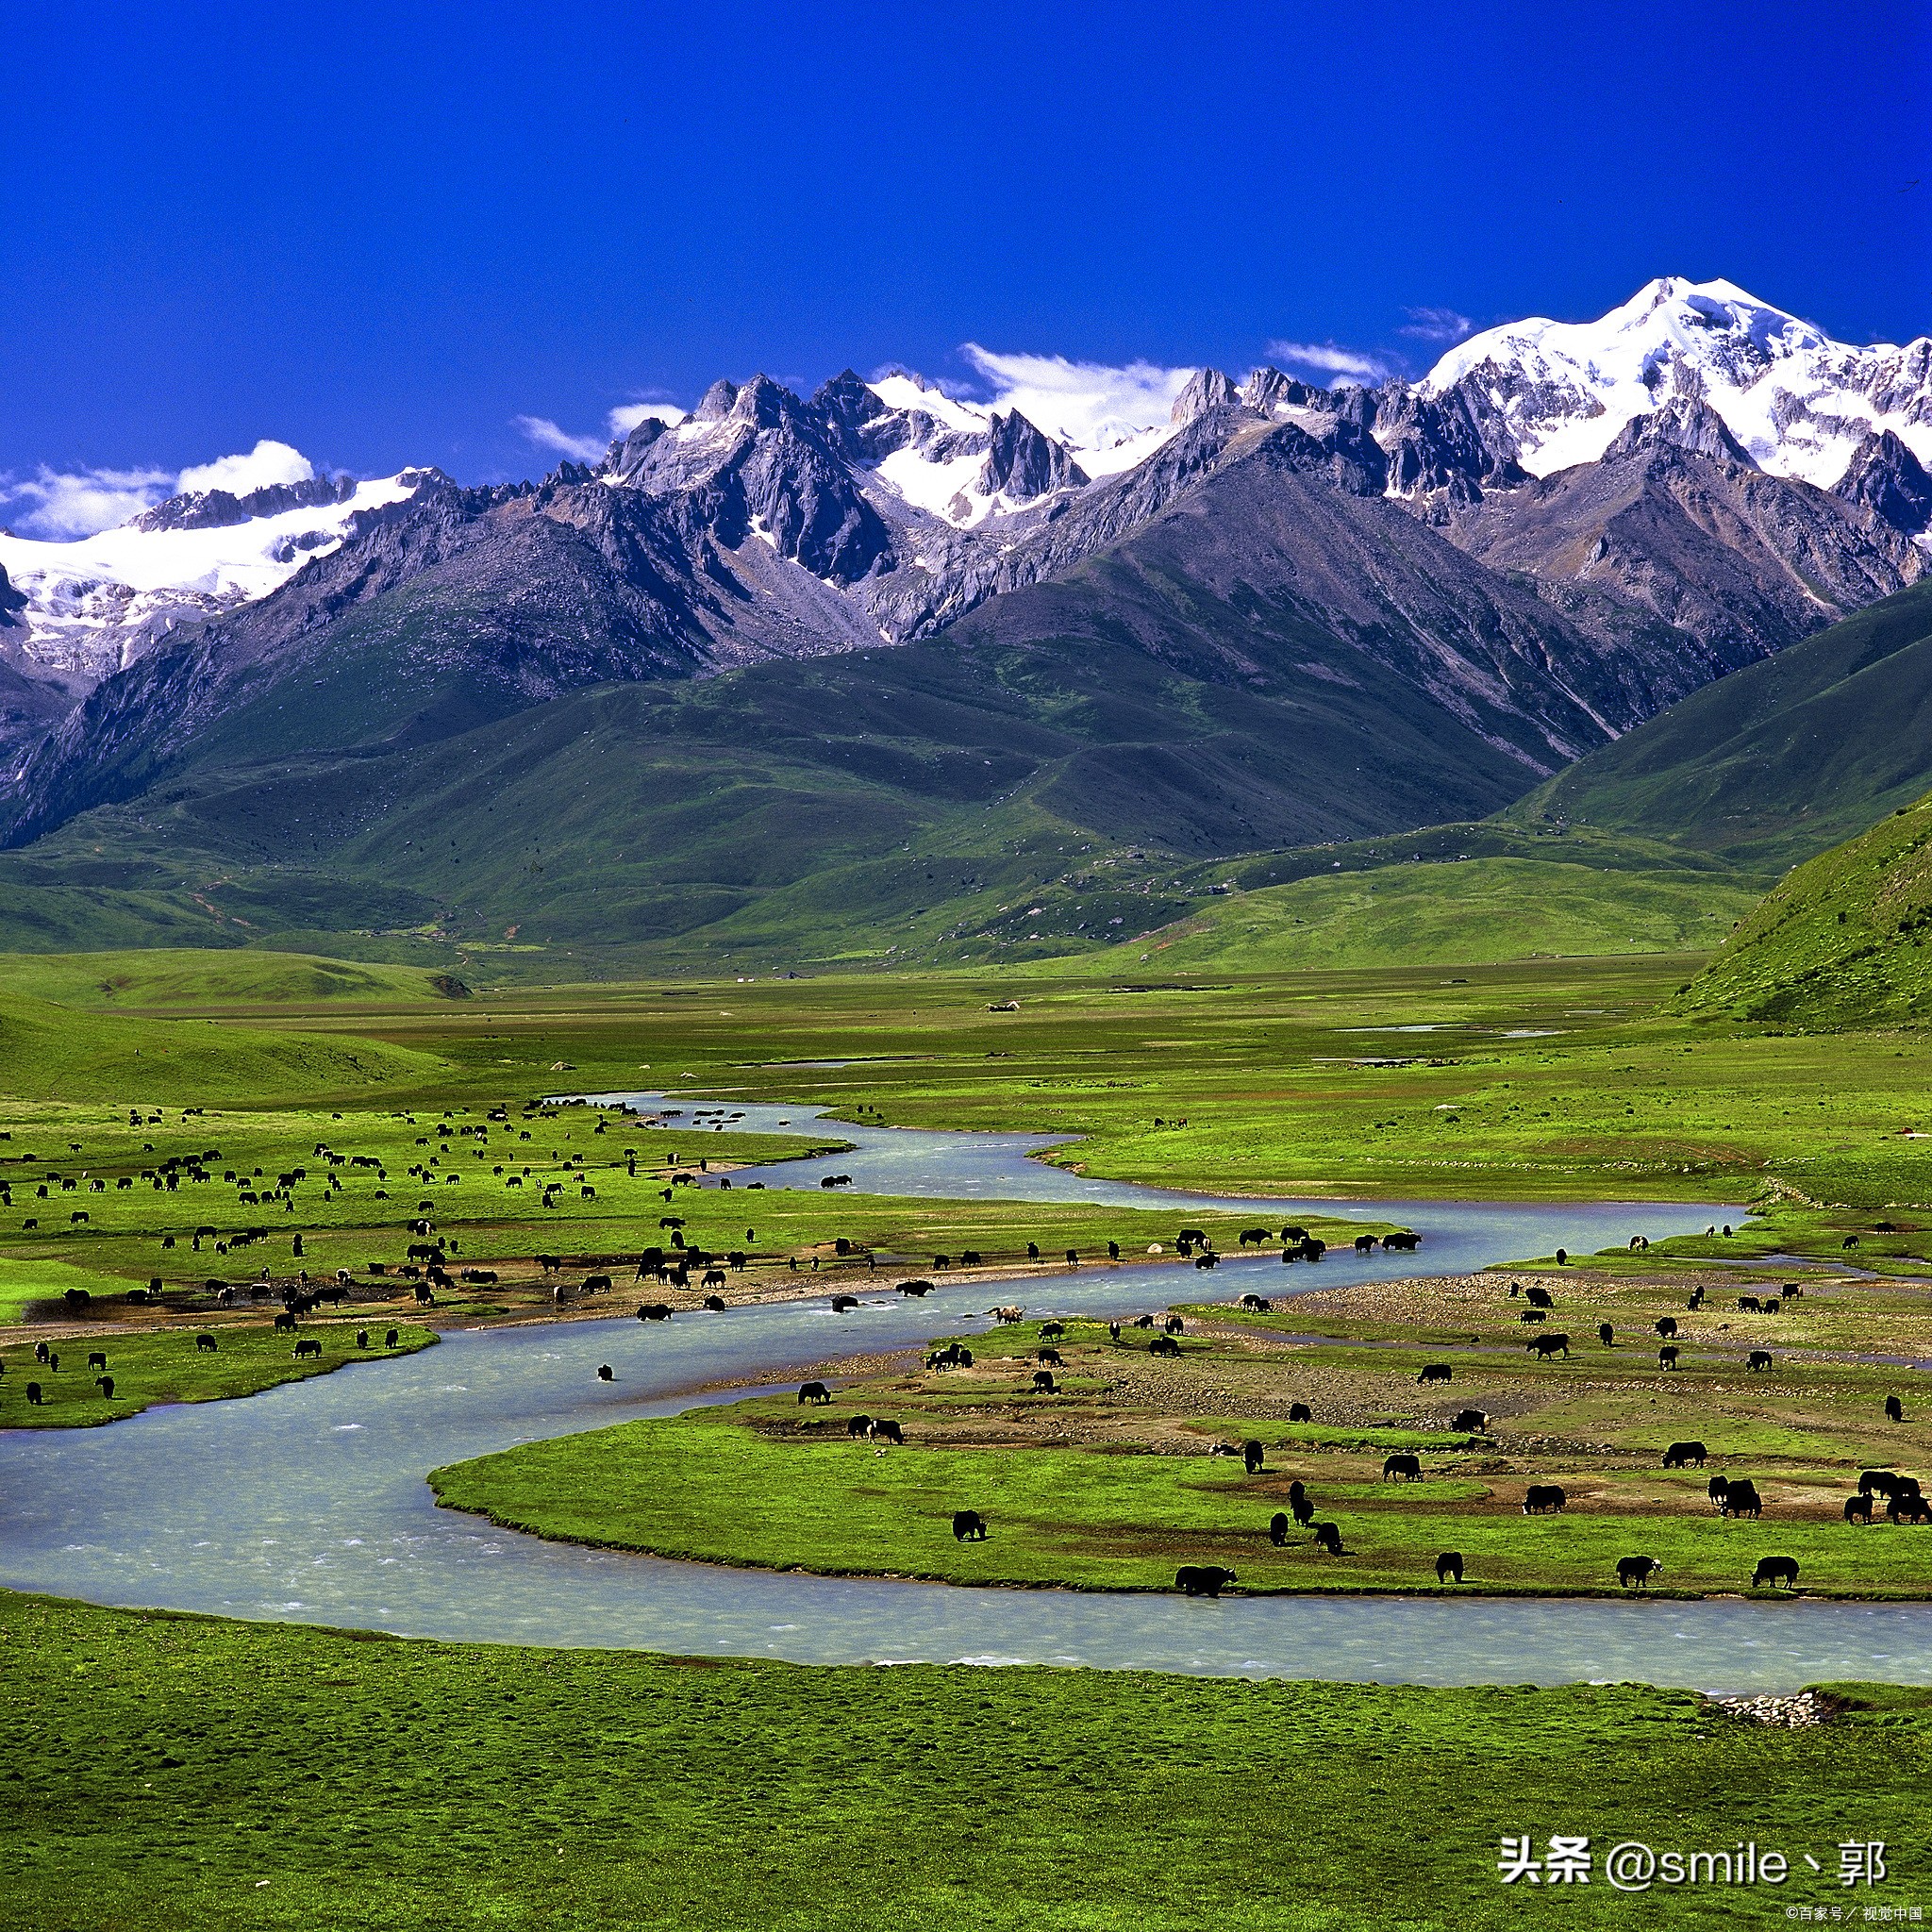 你知道中国最美的六大草原在哪里吗?想要进行草原自驾游,哪个地方最好